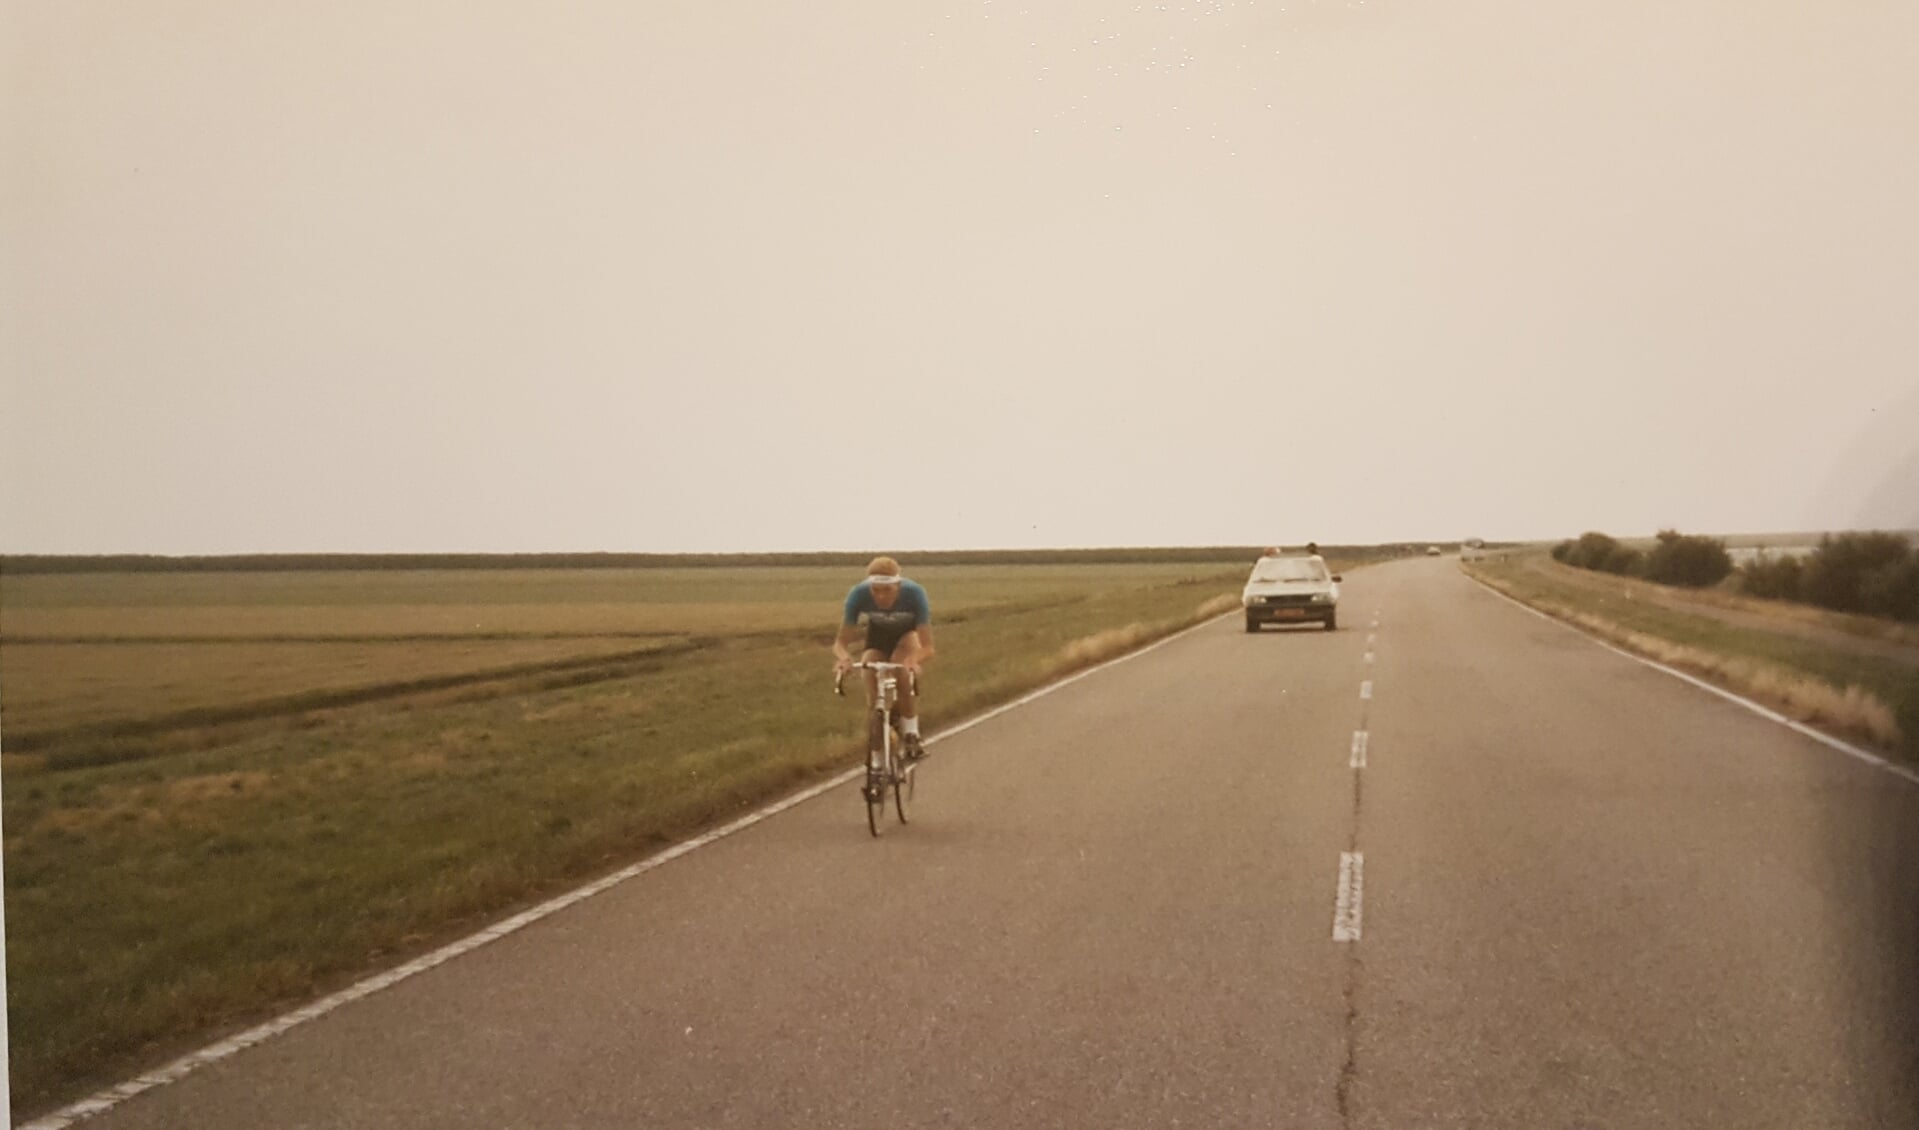 40 jaar geleden werd de mini-triatlon nog in een kale polder gehouden. (Archieffoto: De Meergronden)